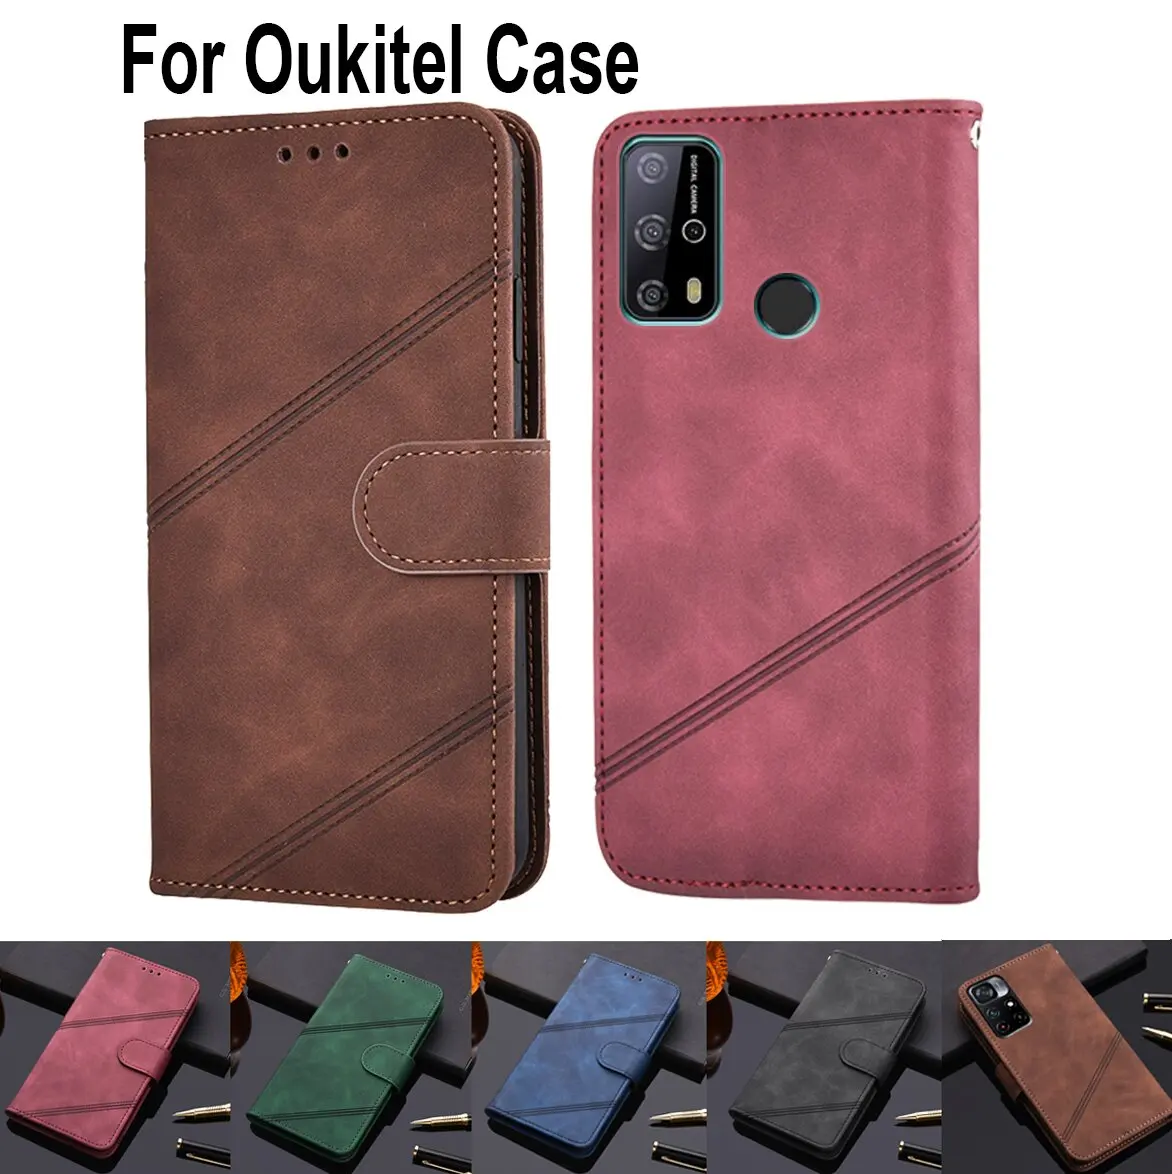 

Luxury Flip Leather Phone Case For Oukitel K3 C10 C13 C15 C16 C17 C11 C12 K8 C8 K3 K5 K6 Pro C12 Plus Stand Protect Cover Hoesje